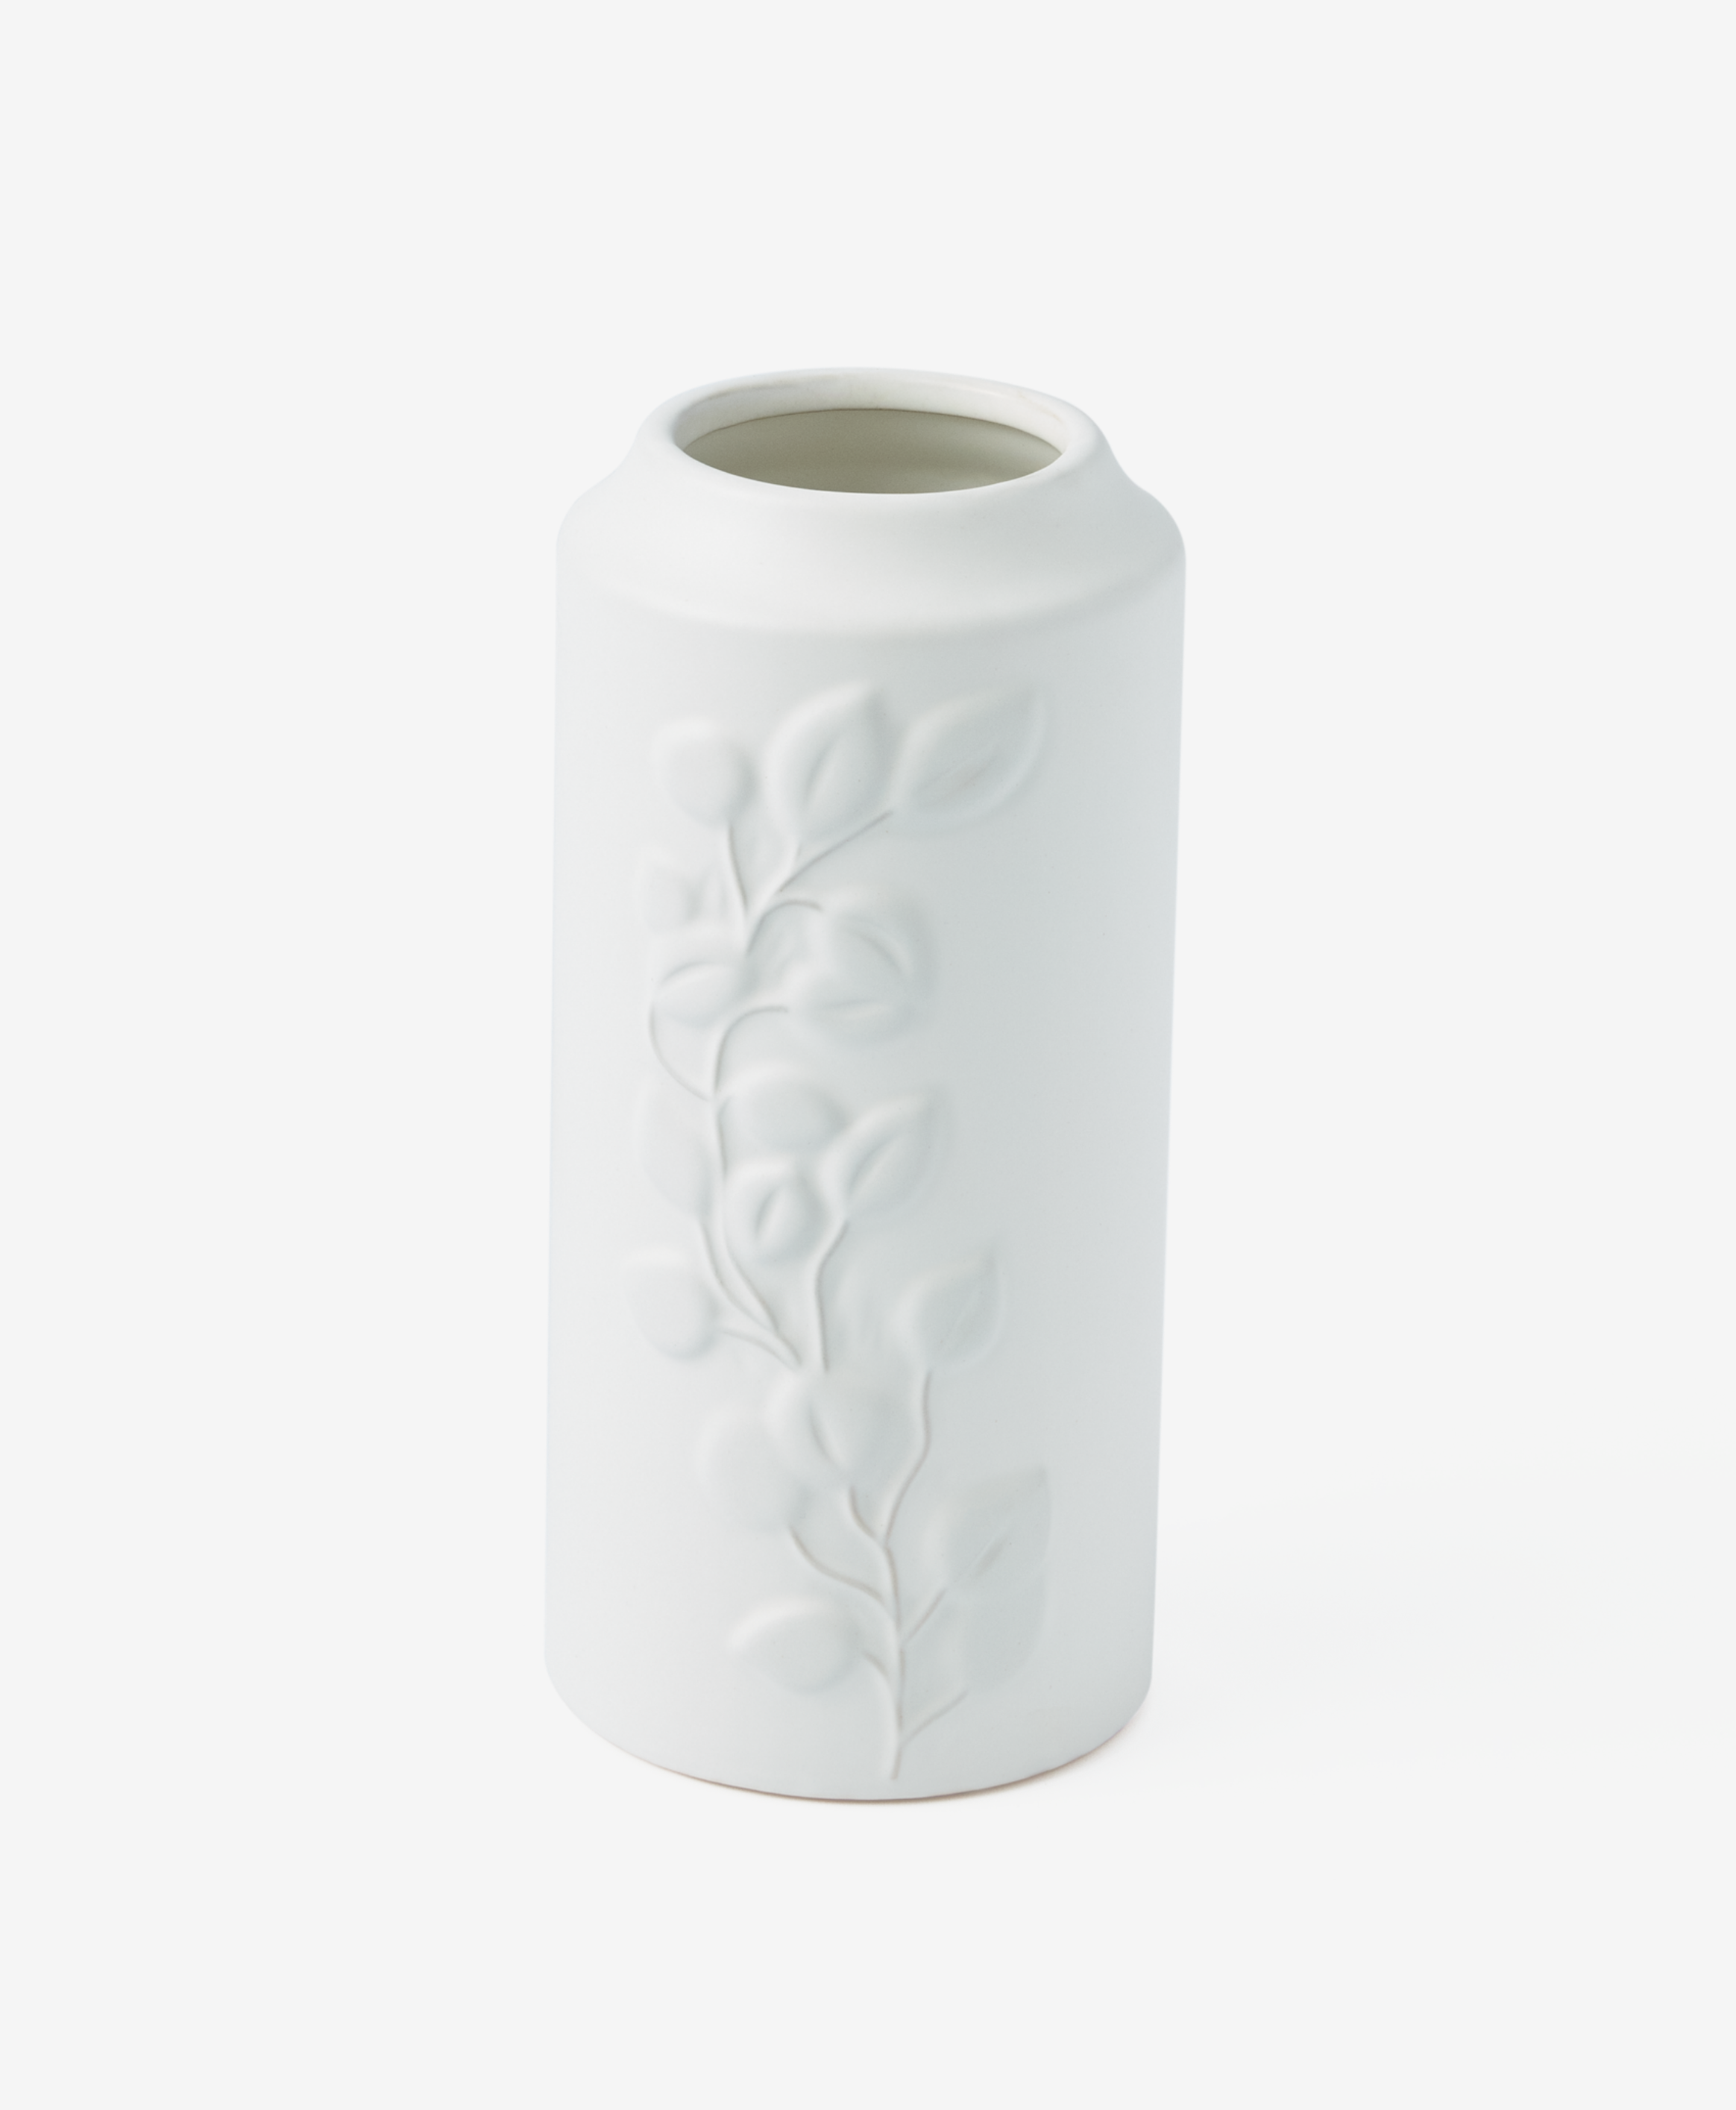 Biała ceramiczna waza na kwiaty, delikatnym tłoczeniem, kolor biały, 13 x 13 x 26 cm